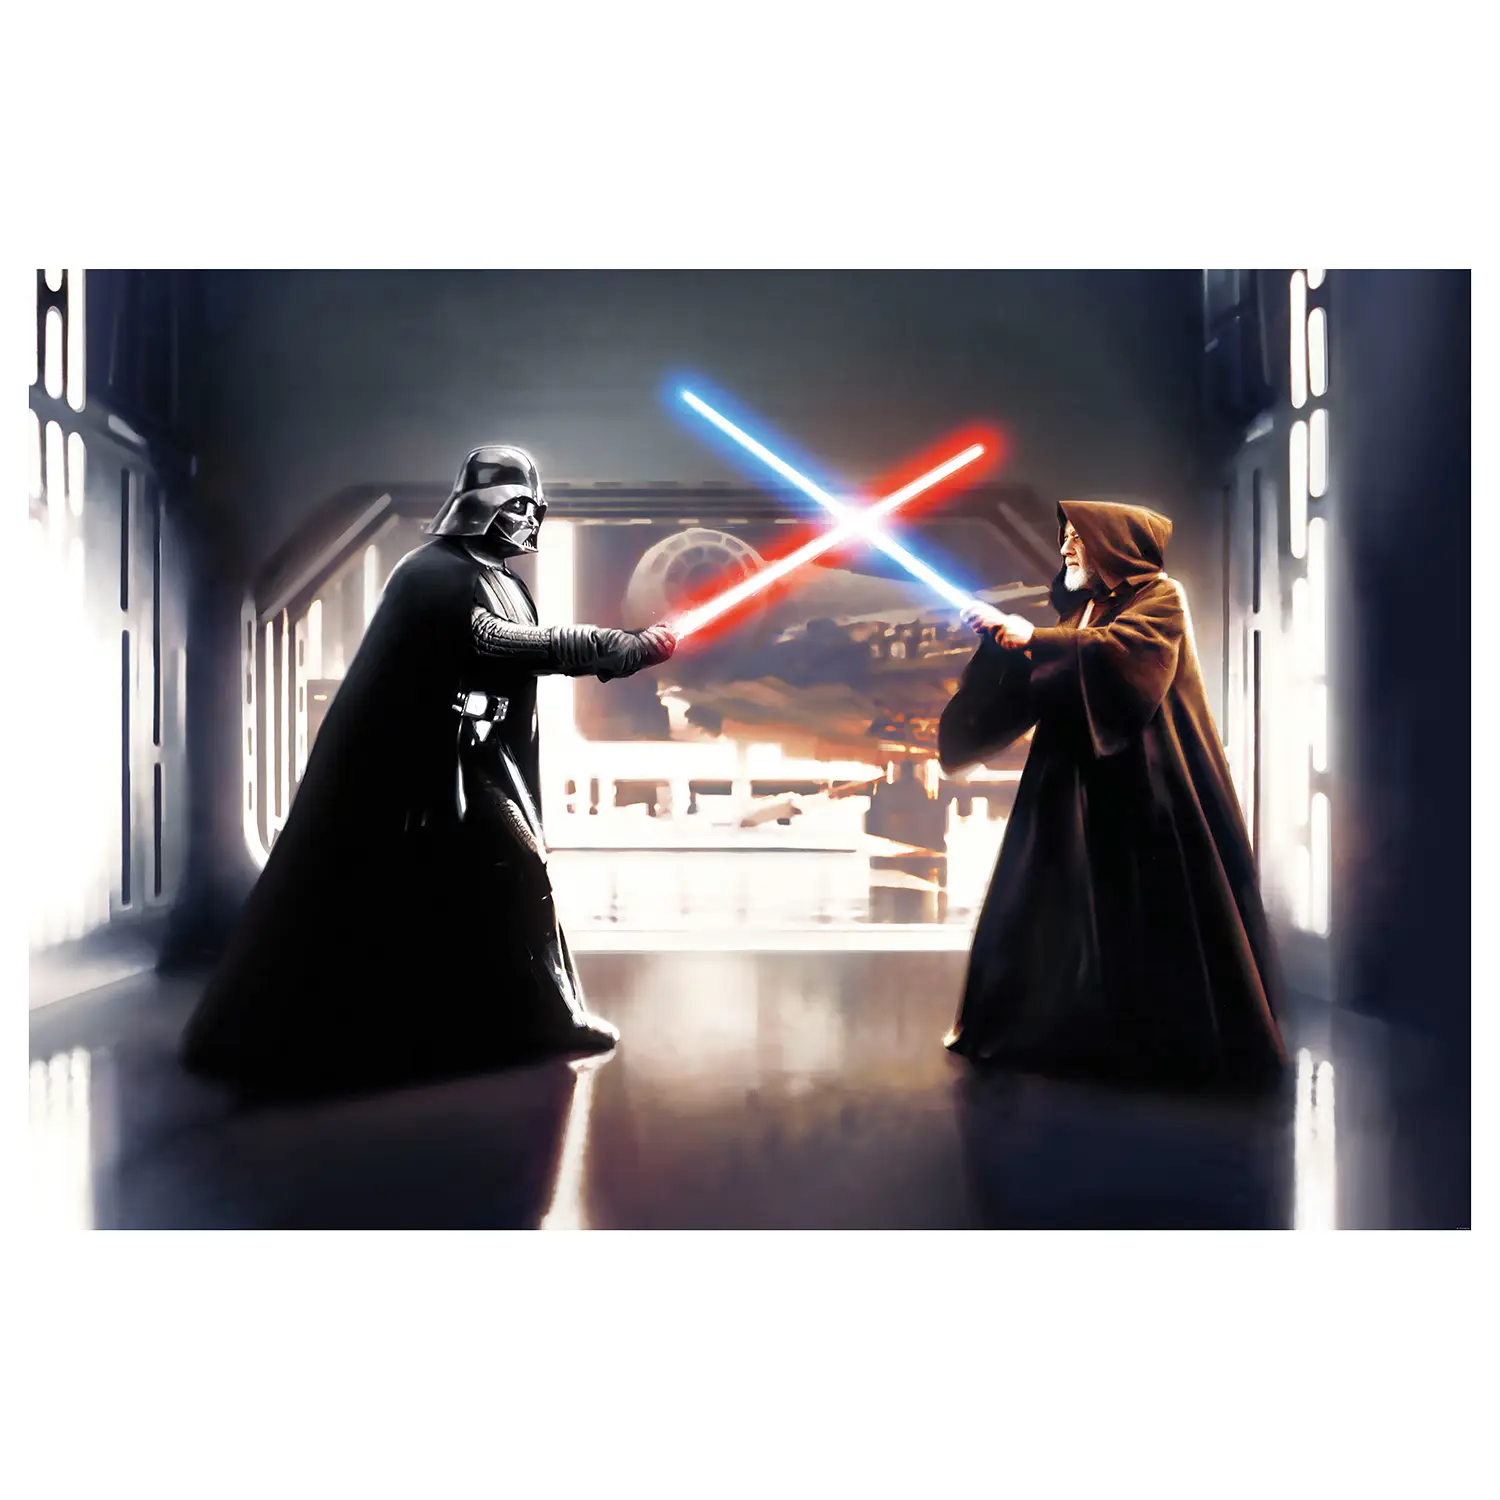 Fototapete Star Wars Vader Kenobi vs